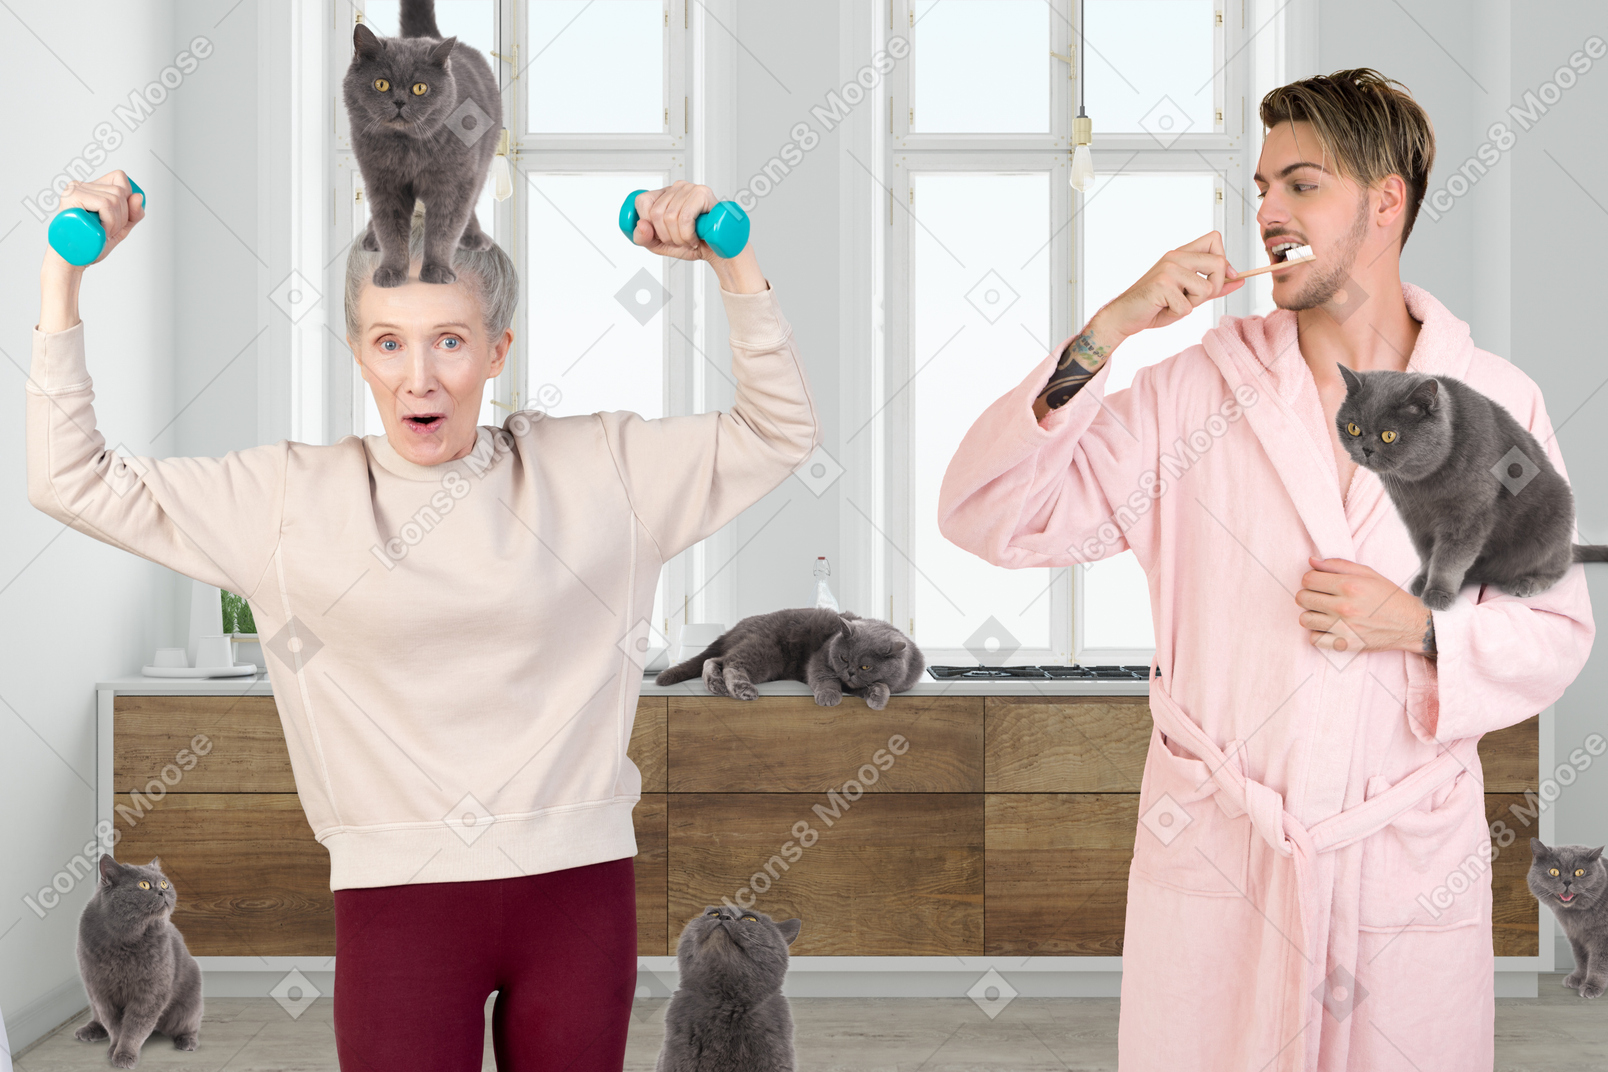 Mann putzt zähne und seine mutter trainiert neben ihm, umgeben von katzen